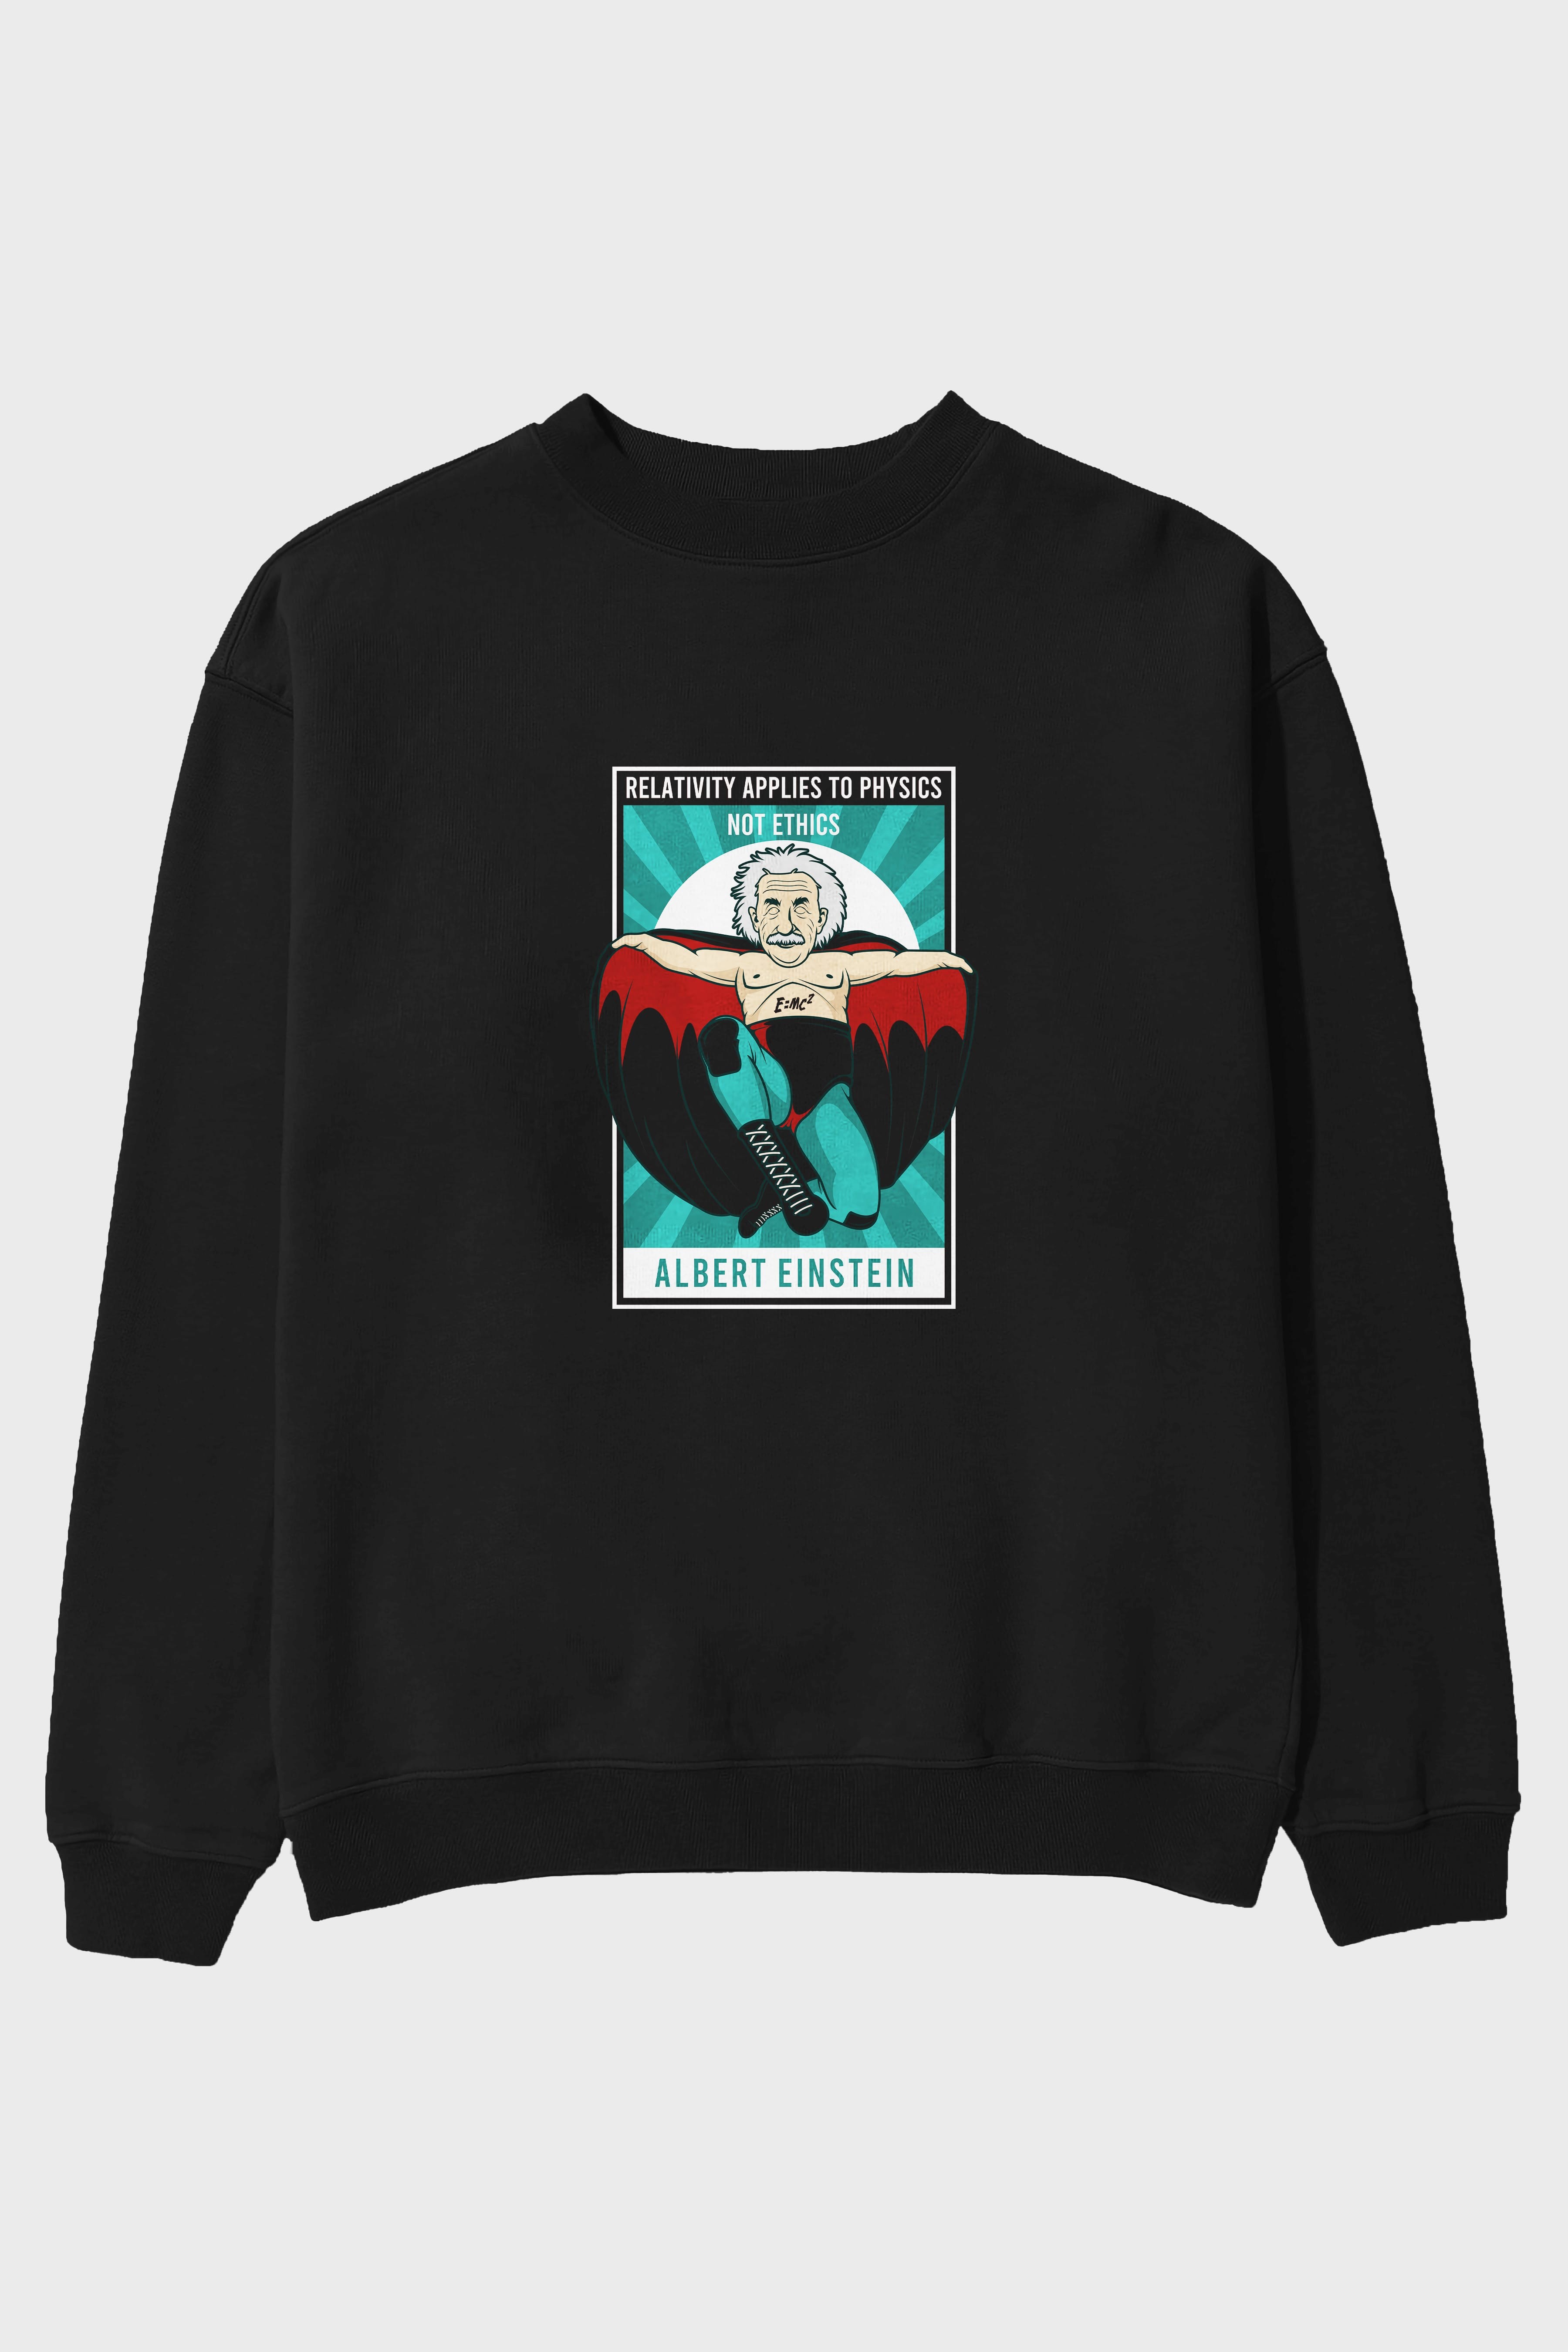 Nacho Libre Einstein Ön Baskılı Oversize Sweatshirt Erkek Kadın Unisex